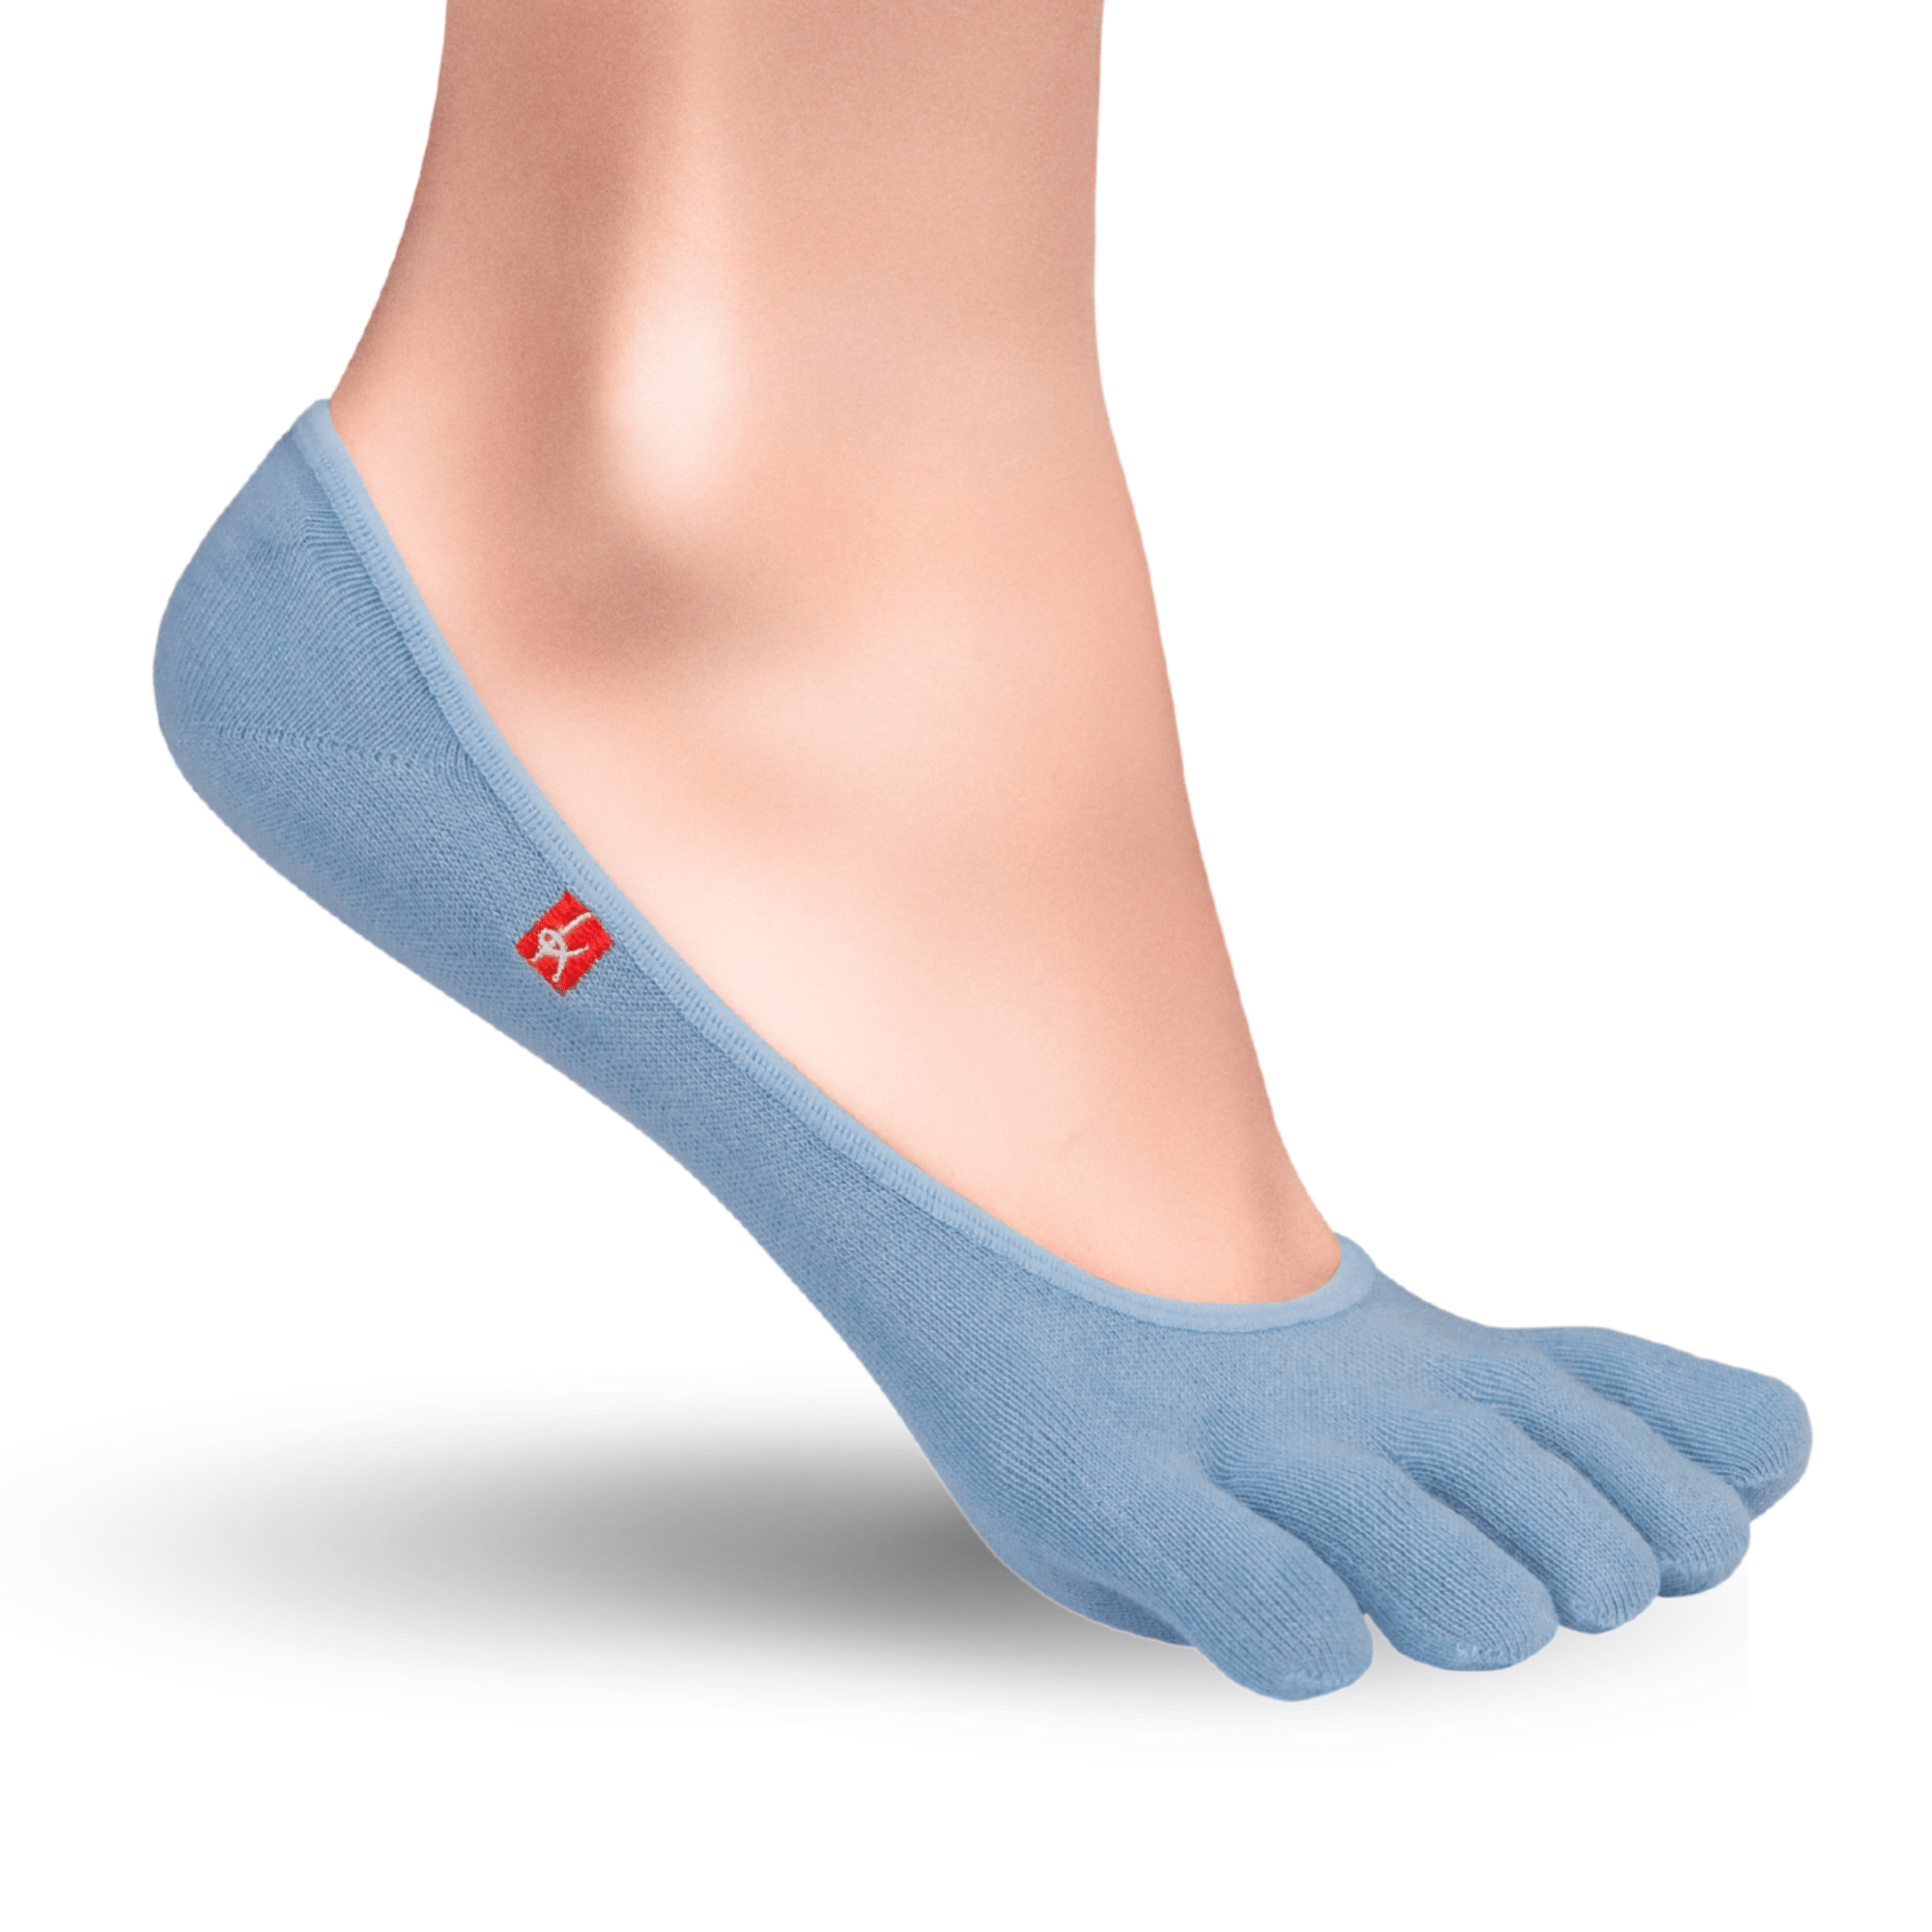 Knitido Zero Coolmax chaussons orteils femme chaussettes à orteils en bleu clair